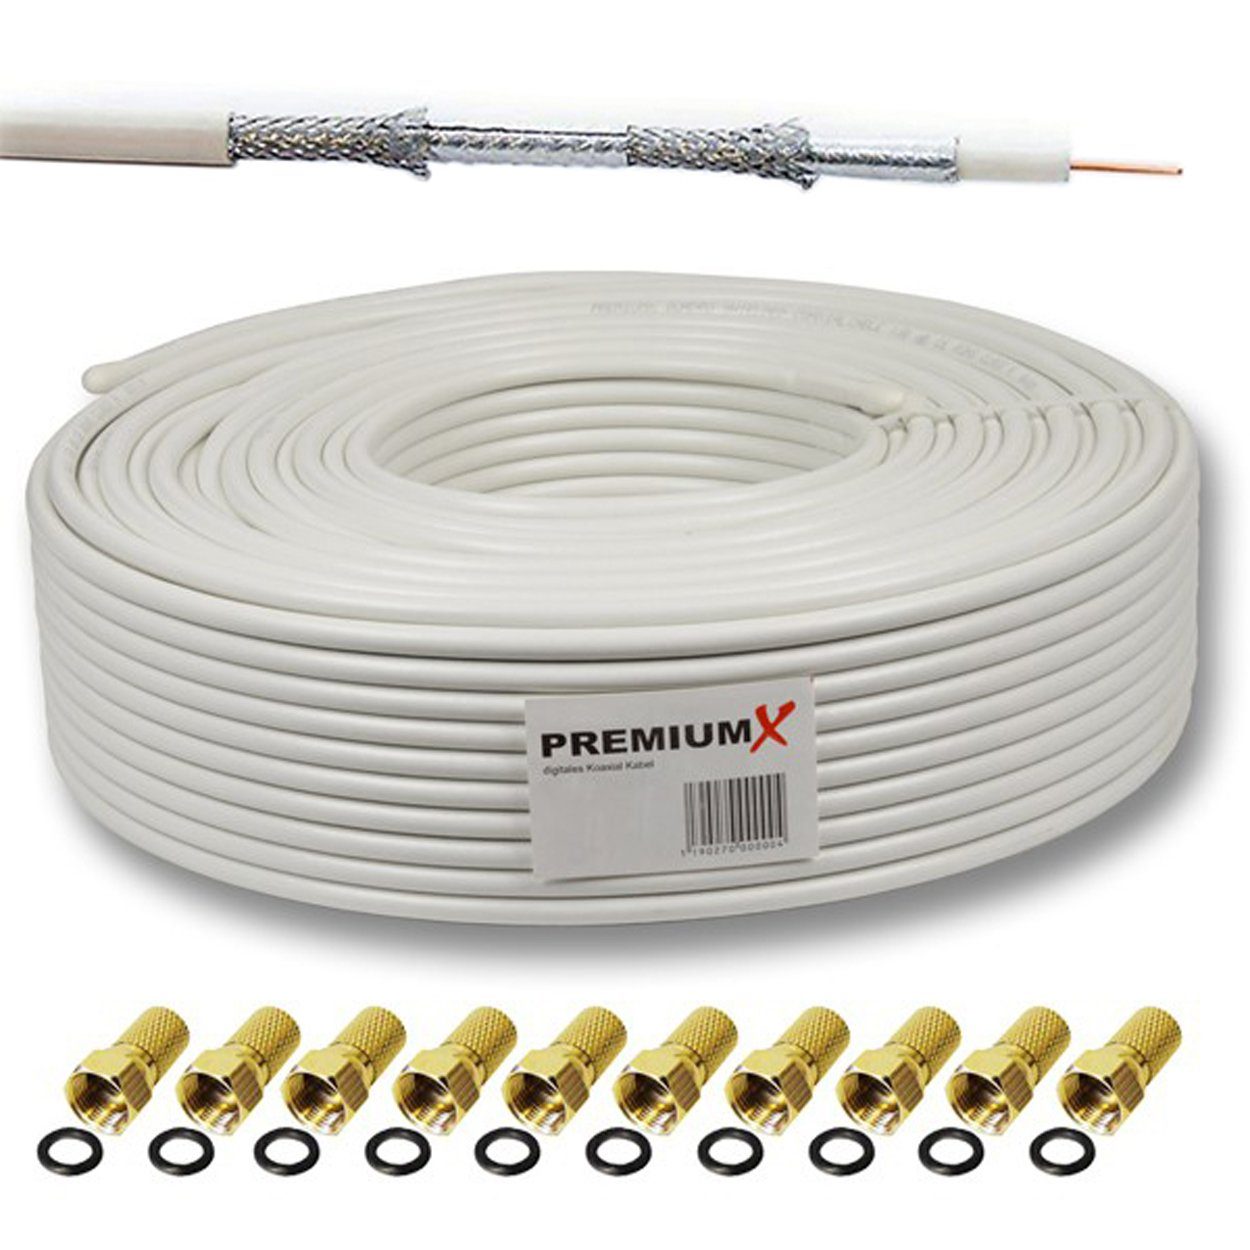 PremiumX 50m DELUXE Sat Kabel 130dB 4-Fach Innenleiter Kupfer SAT F-Stecker SAT-Kabel